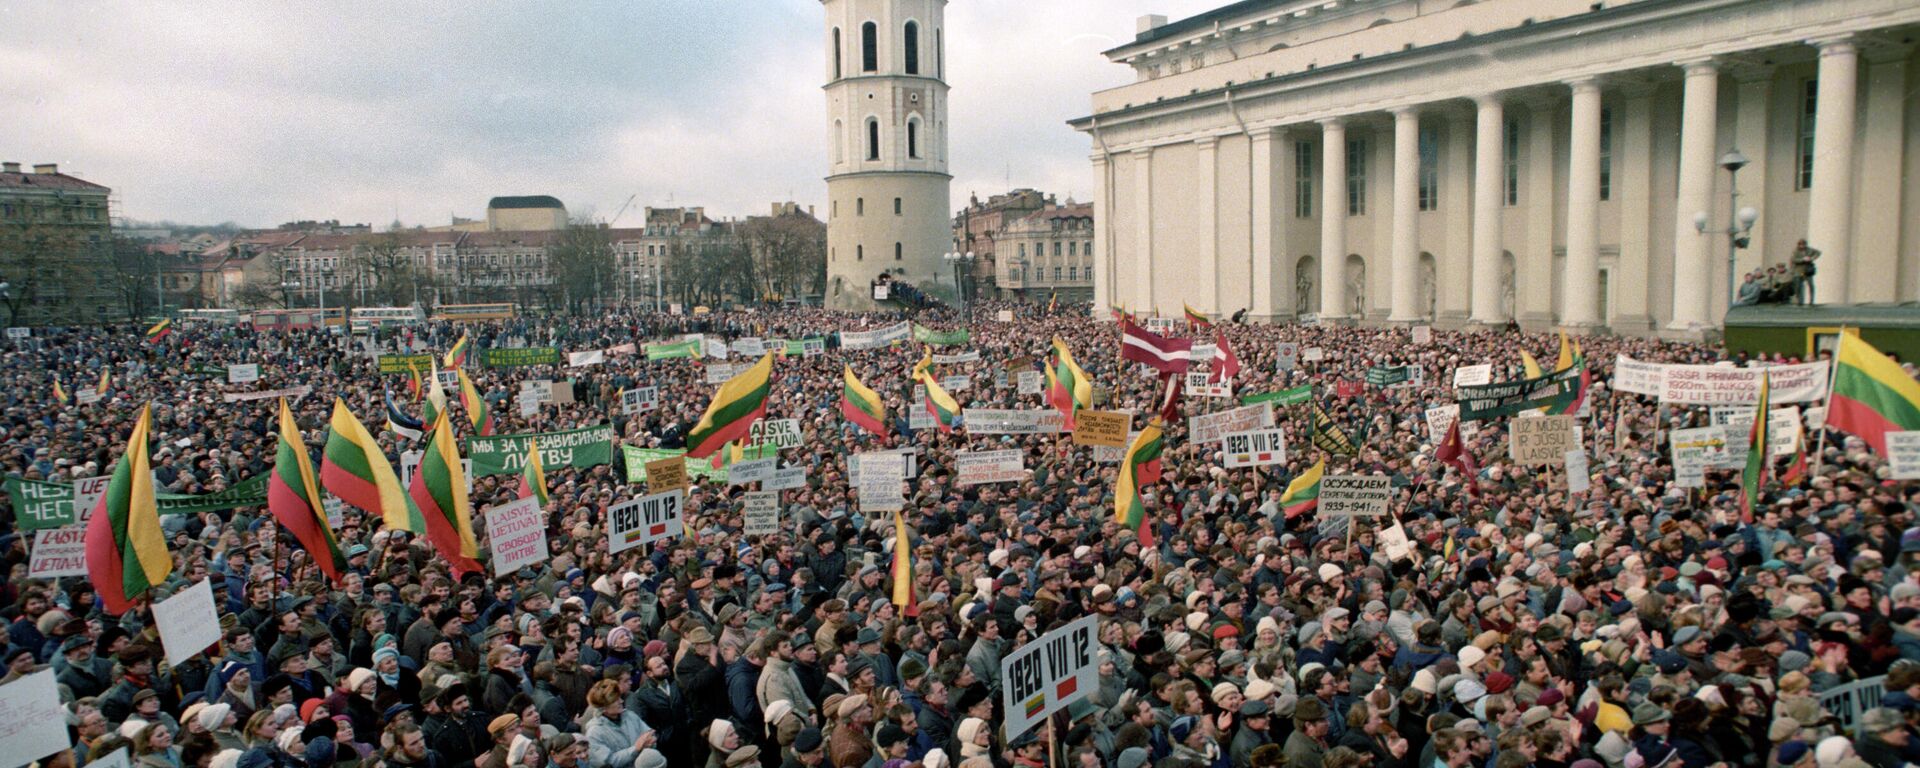 Митинг на Кафедральной площади Вильнюса, архивное фото - Sputnik Литва, 1920, 27.12.2021